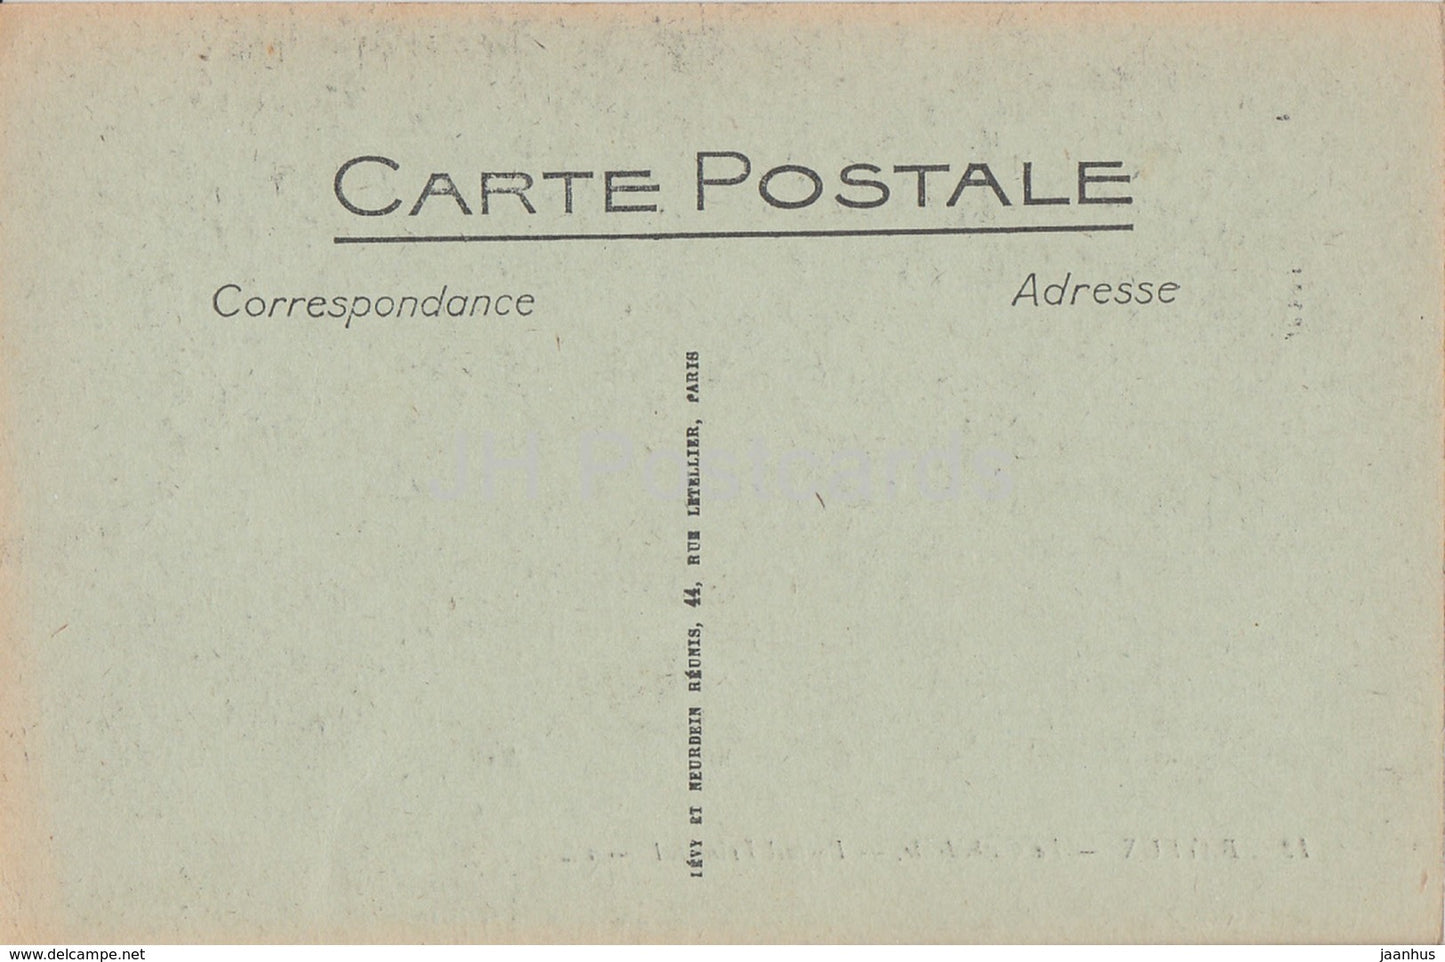 Bayeux - La Cathédrale - Portail Principal - 12 - cathédrale - carte postale ancienne - France - inutilisée